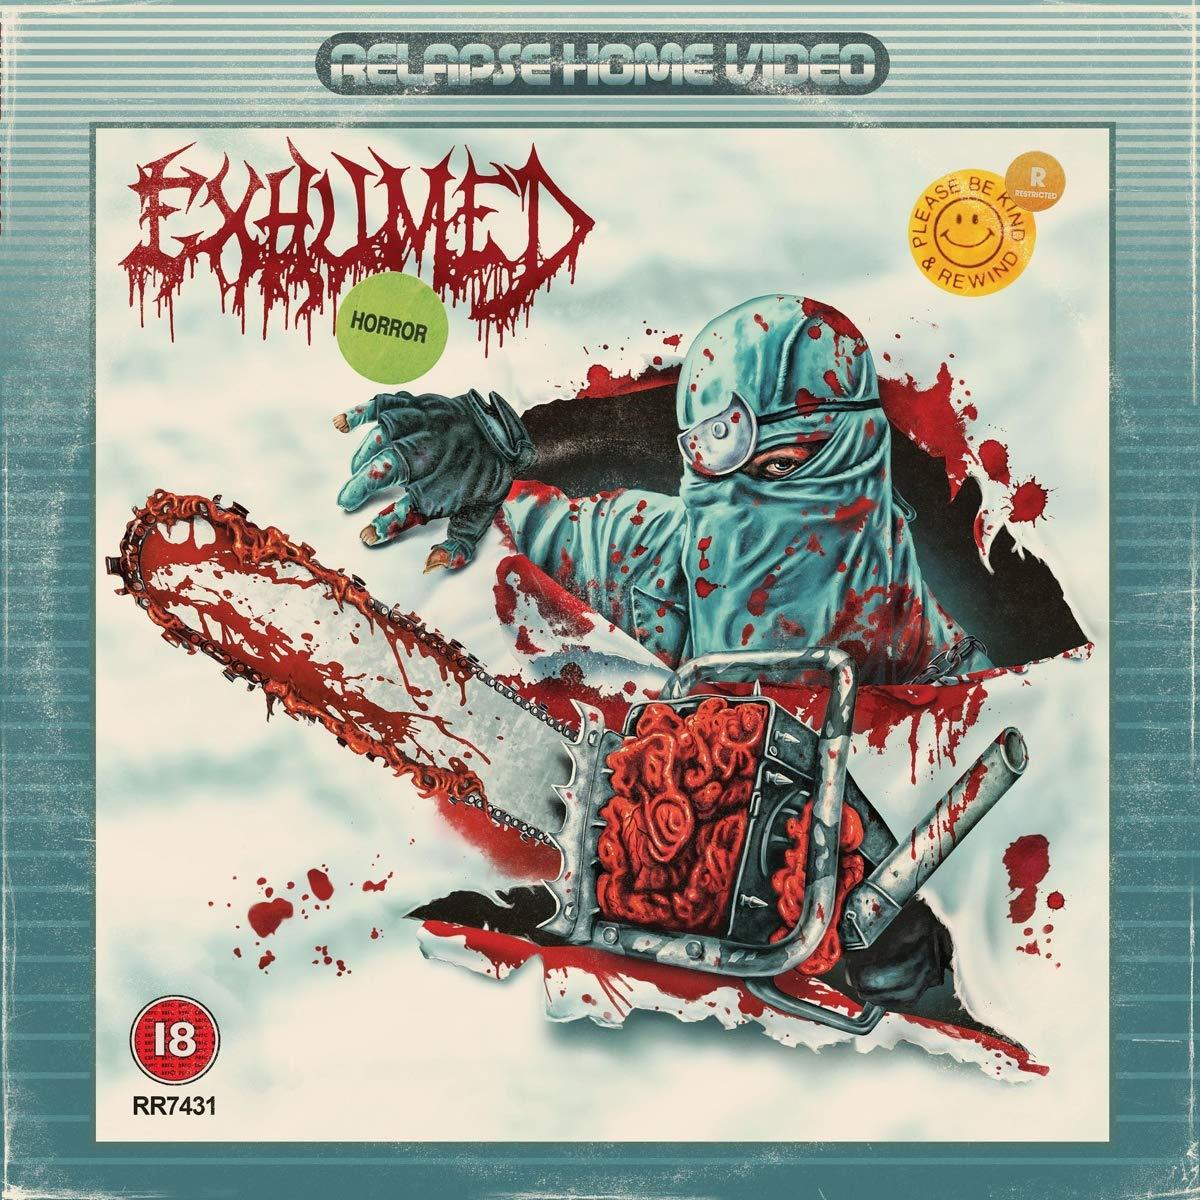 (CD) Exhumed - - HORROR